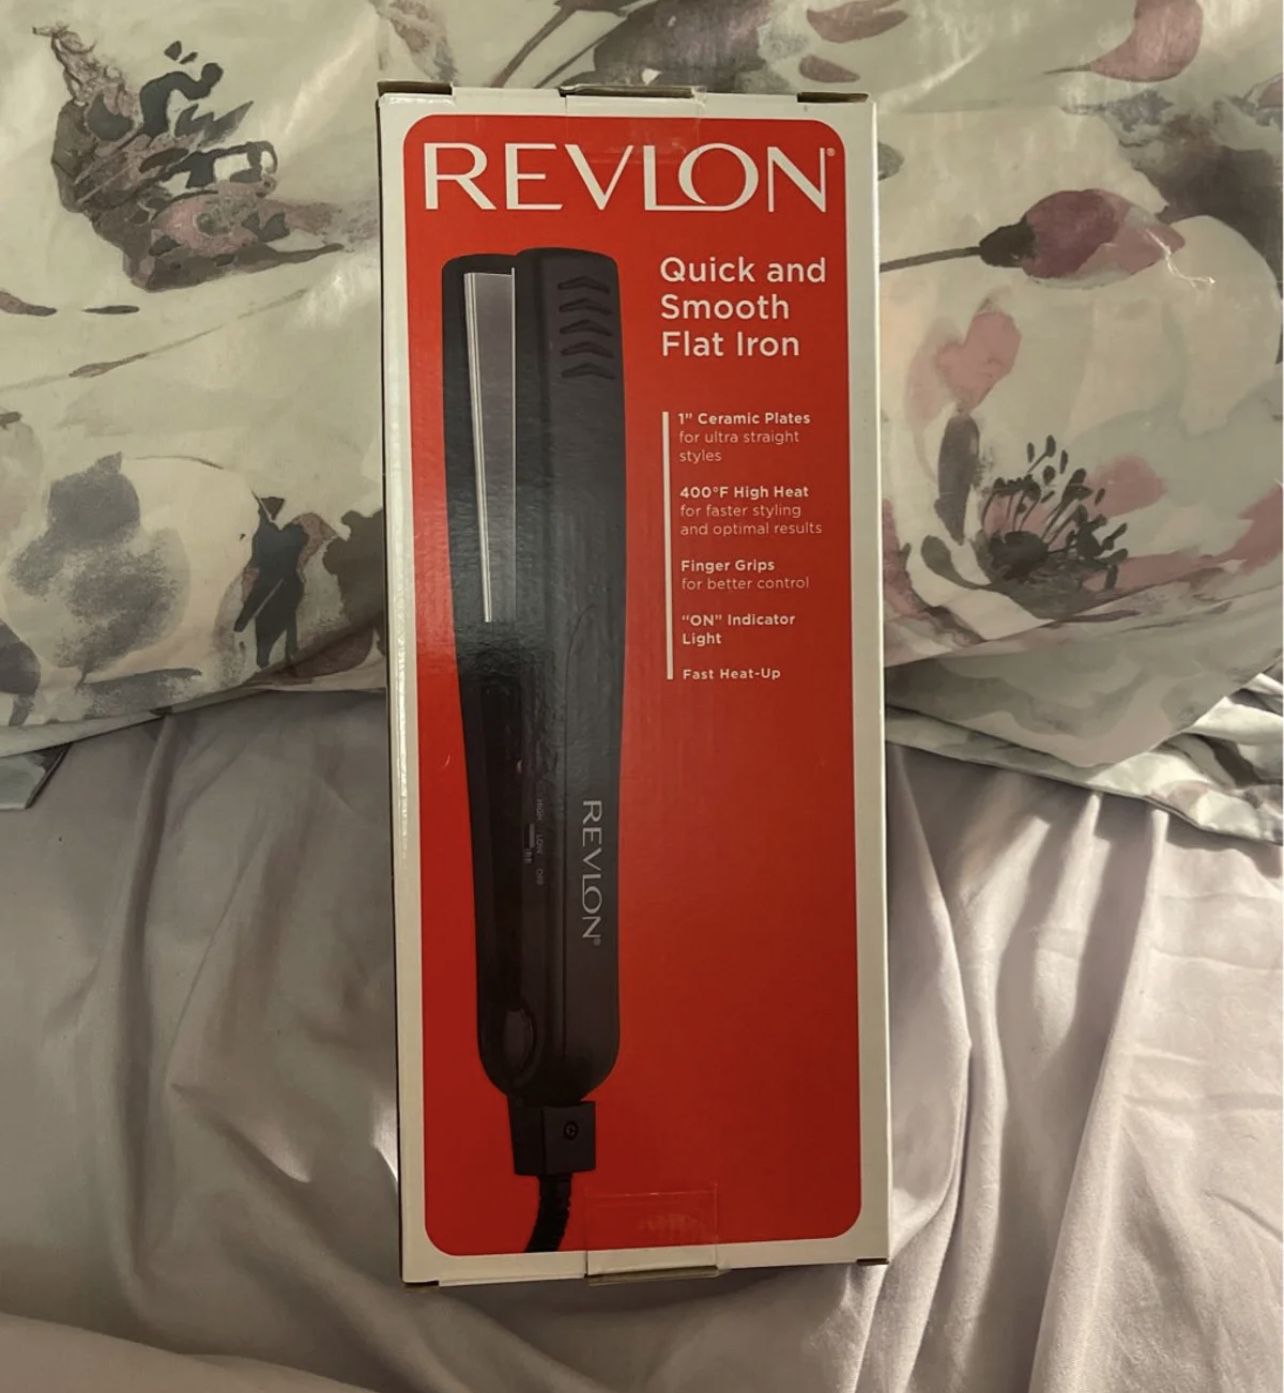 New Revlon Straightener